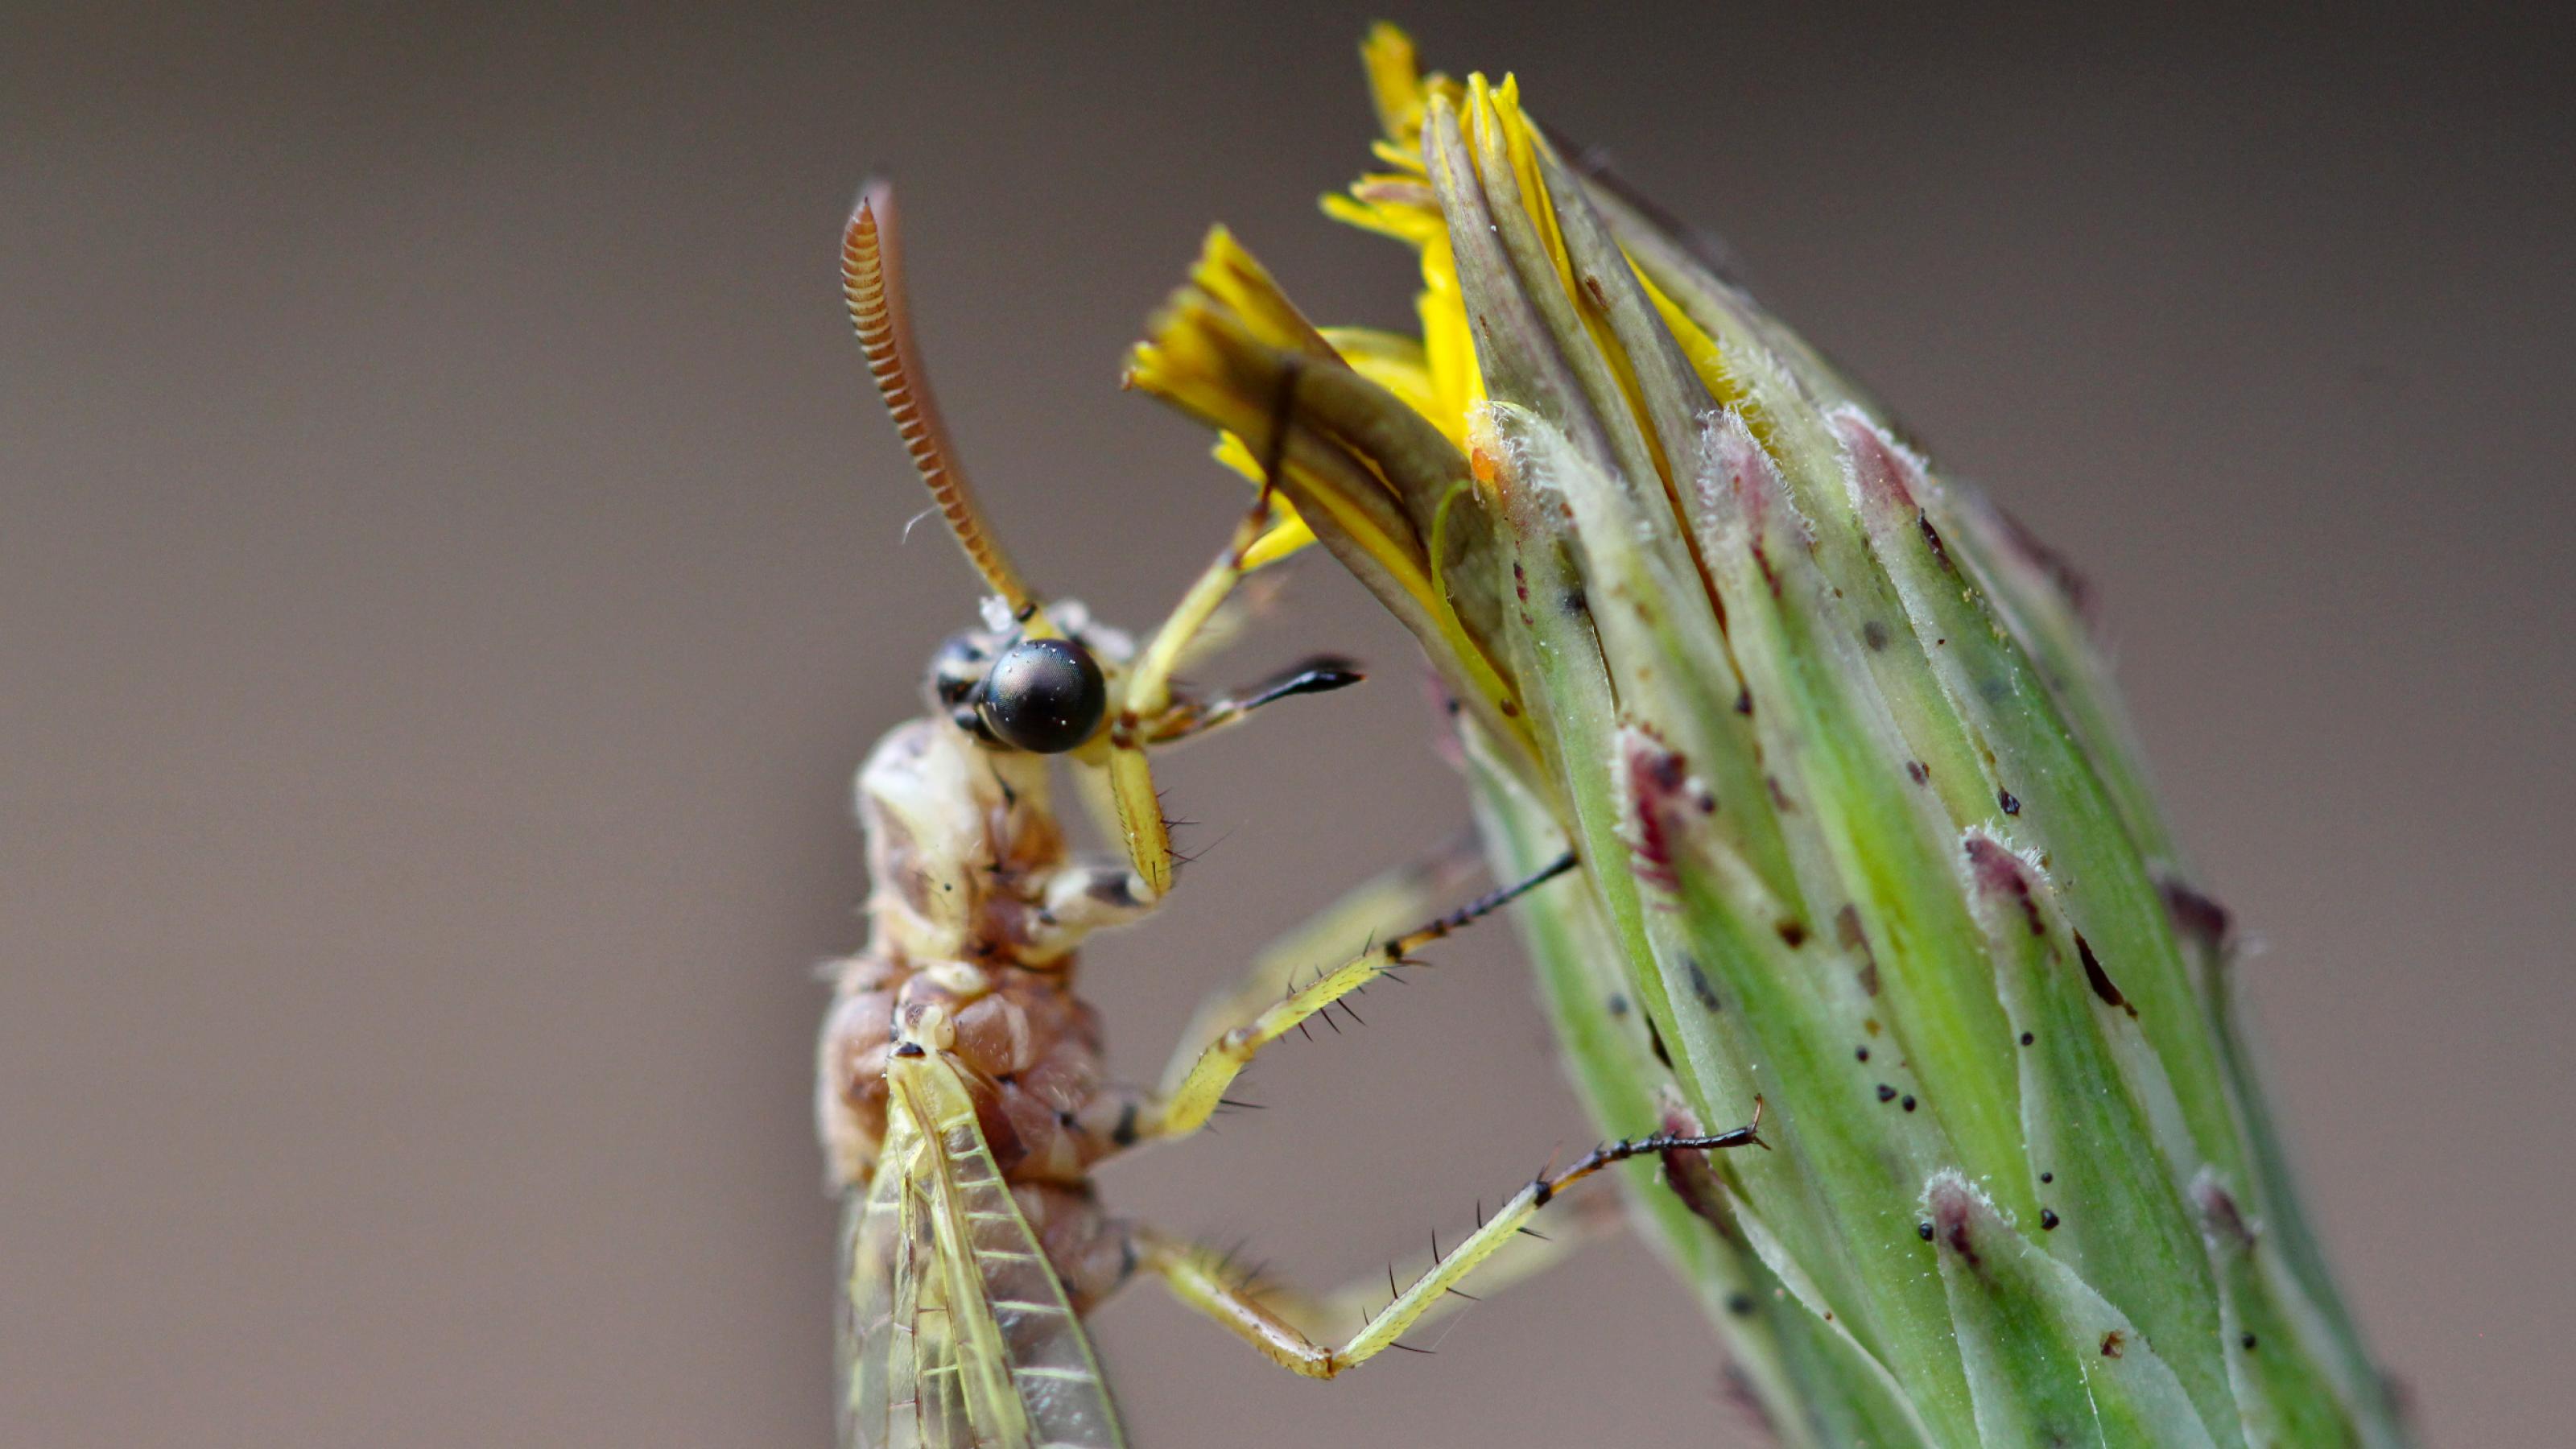 Ein bräunliches Insekt klammert sich an eine gelbe, geschlossene Blüte.